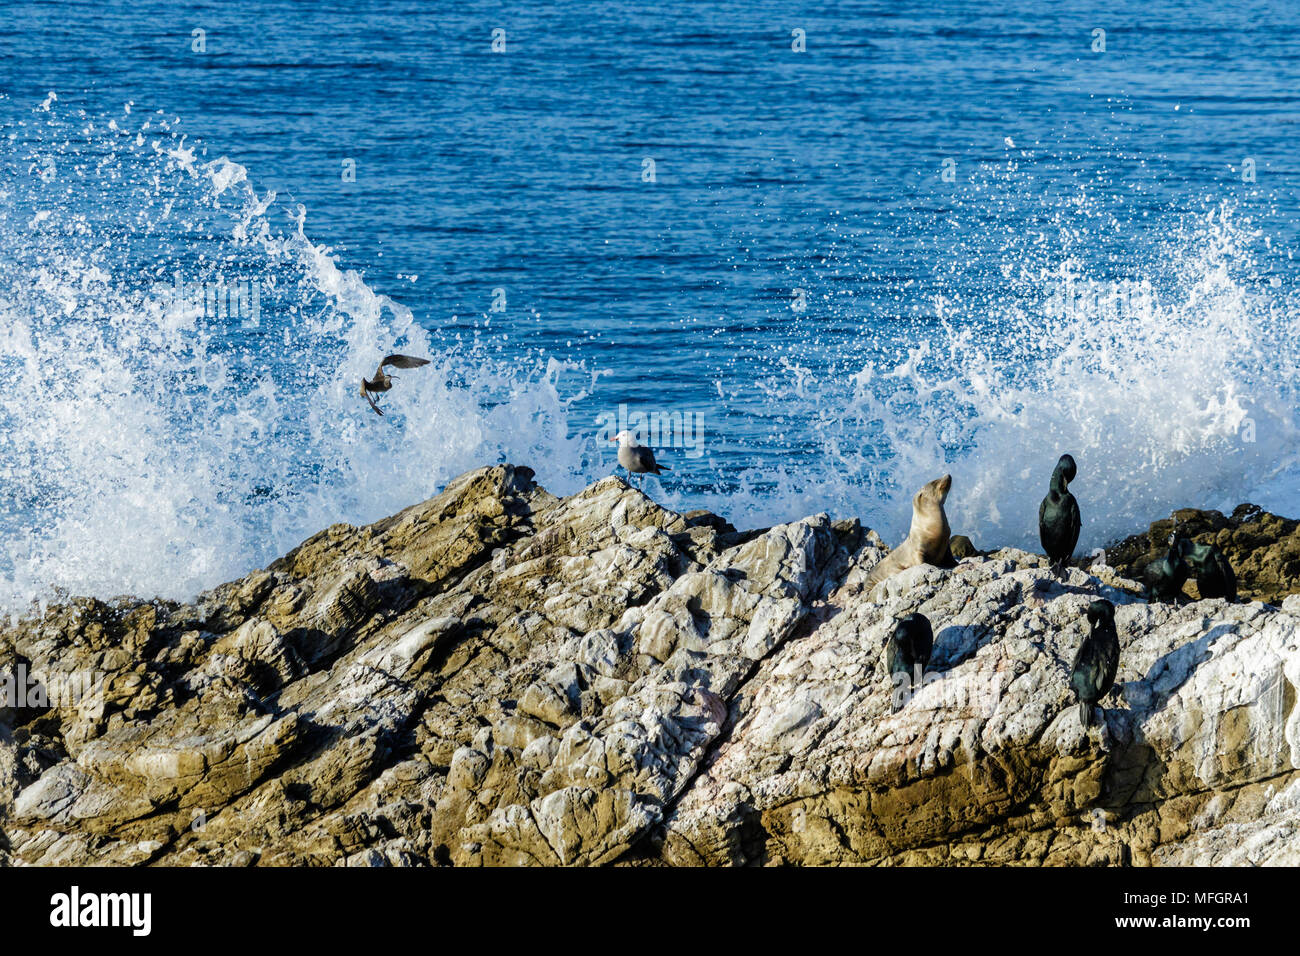 Leo Carrillo State Park cerca de Malibu, California. Variedad de animales marinos, sentado sobre una roca; océano Pacífico y ola rompiendo en el fondo. Foto de stock